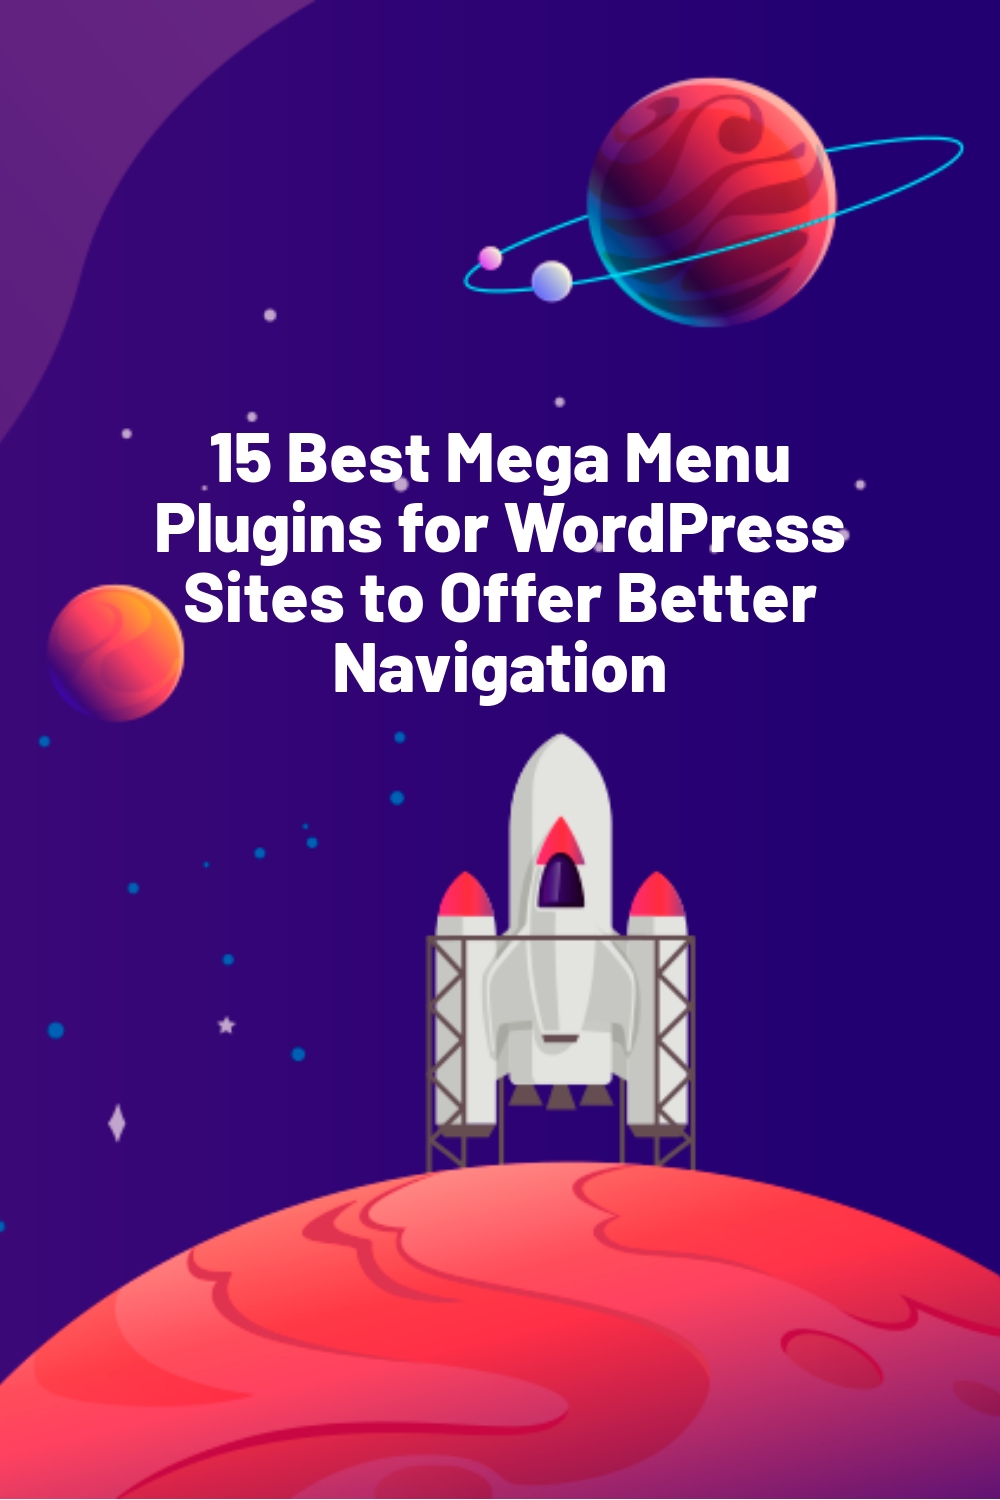 15 Best Mega Menu Plugins for WordPress Sites to Offer Better Navigation